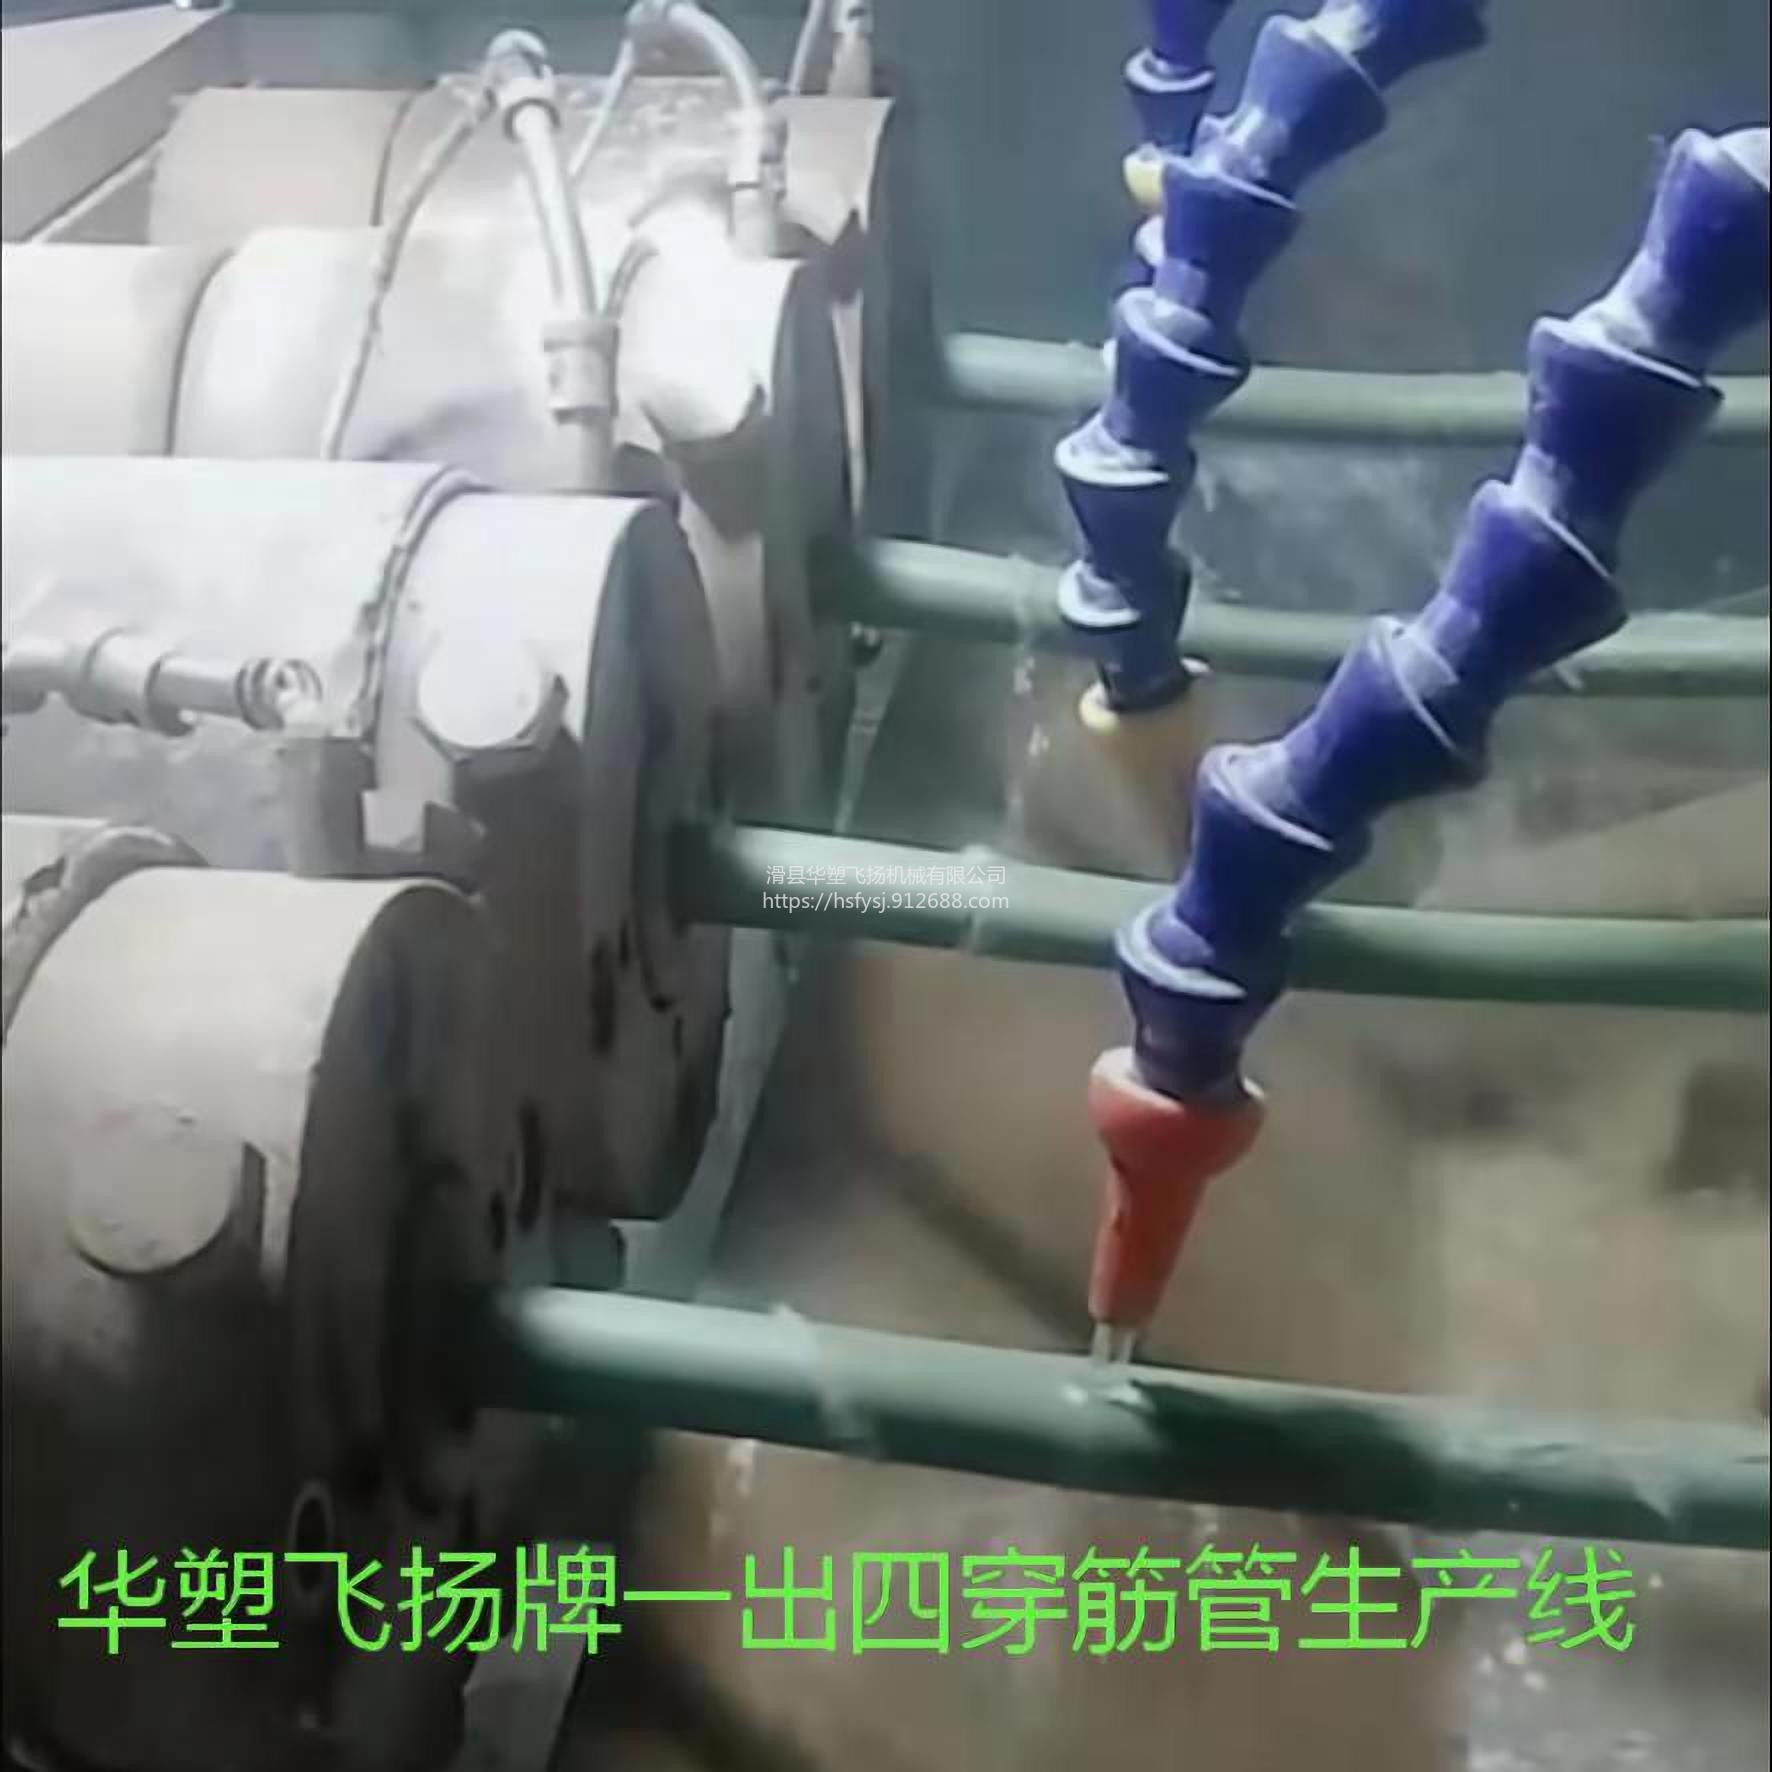 飞洋158 供PE管材挤出生产线 PVC管材挤出机组 塑料管材机器图片